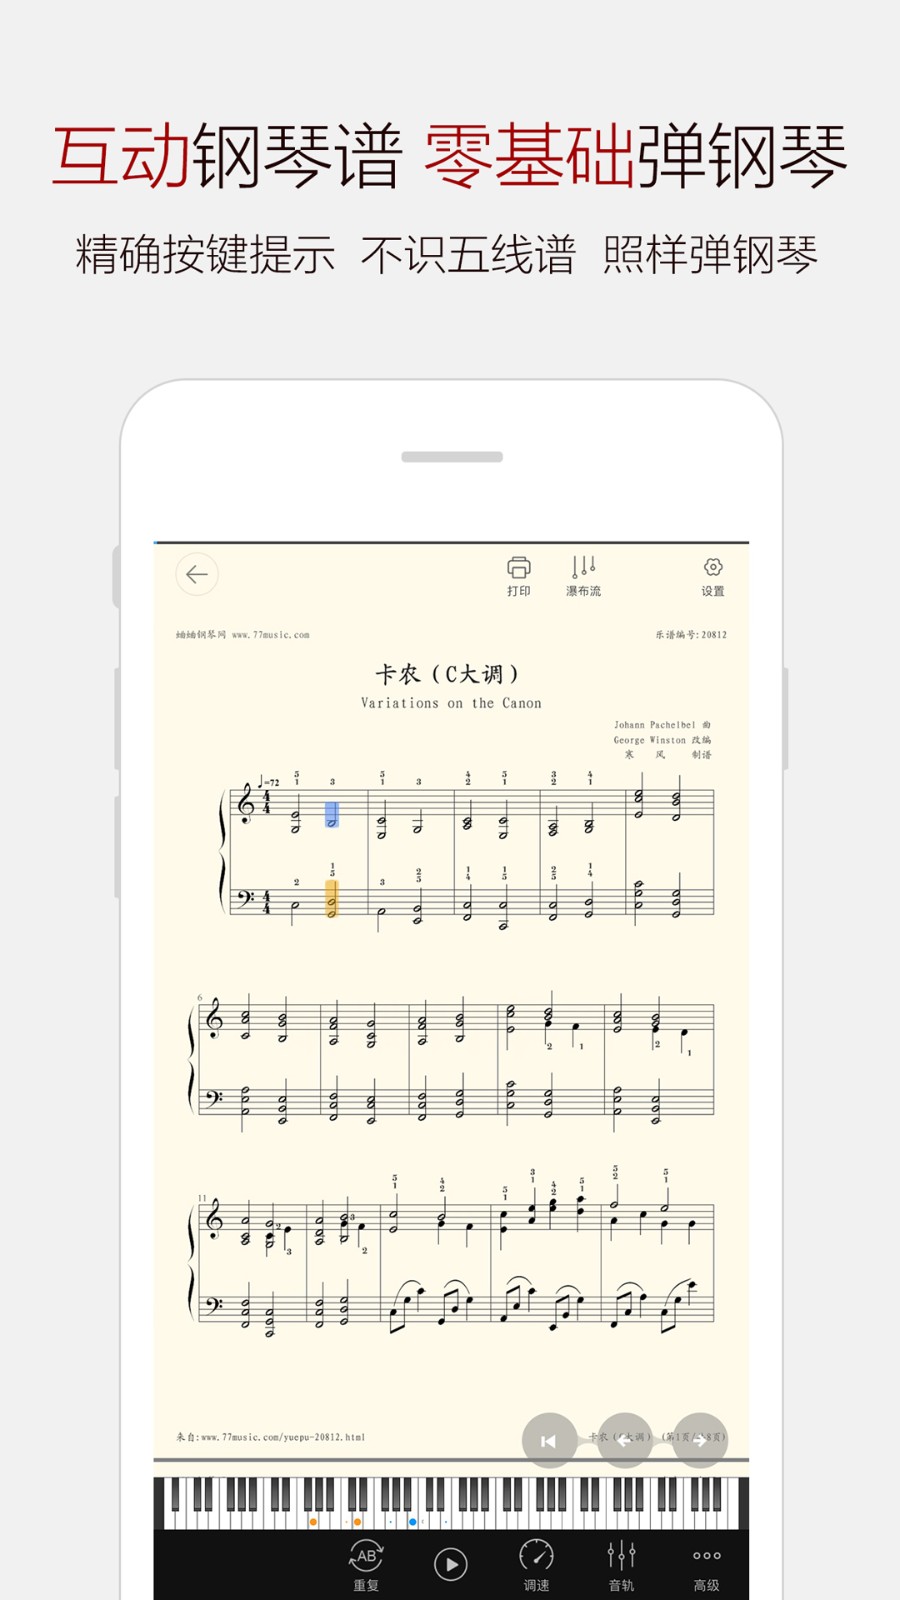 钢琴谱大全app安卓版下载免费版